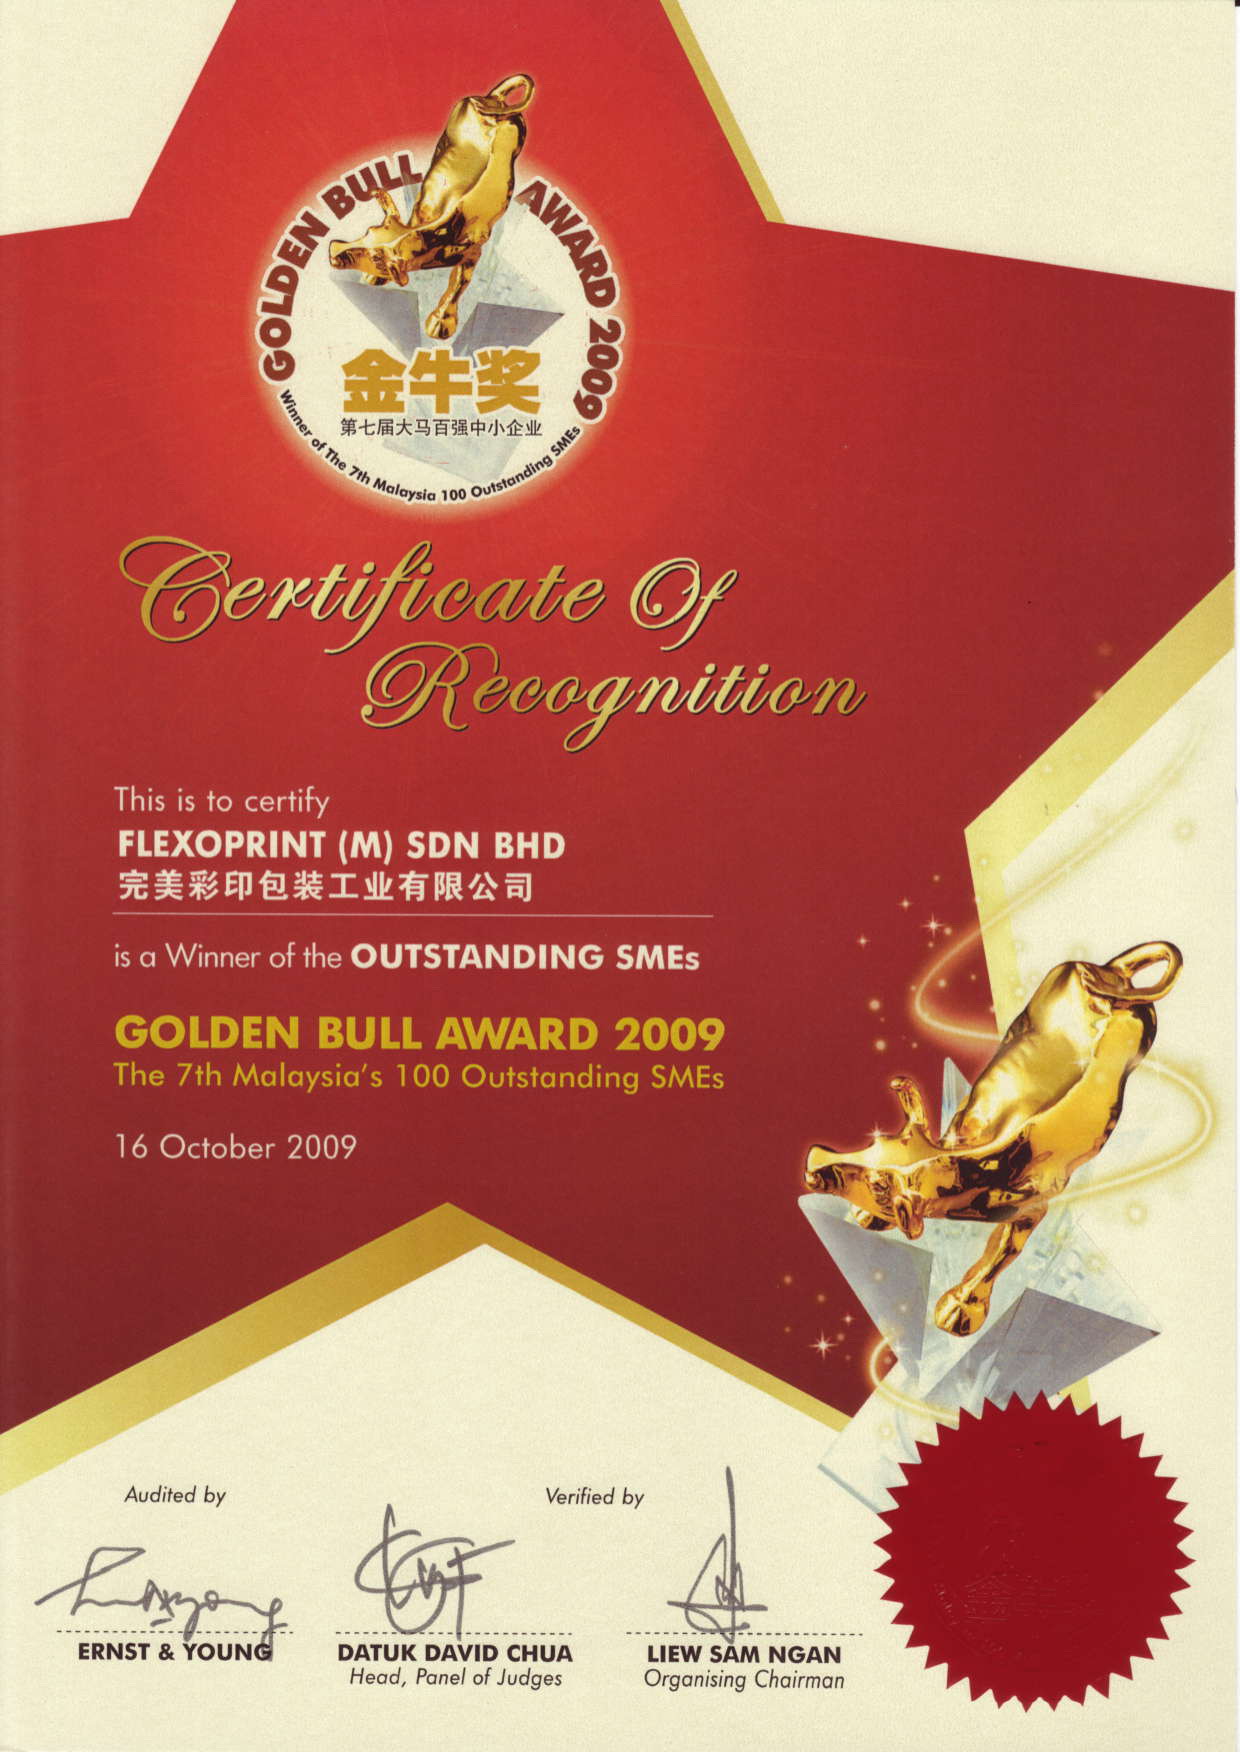 Golden Bull Award 2009